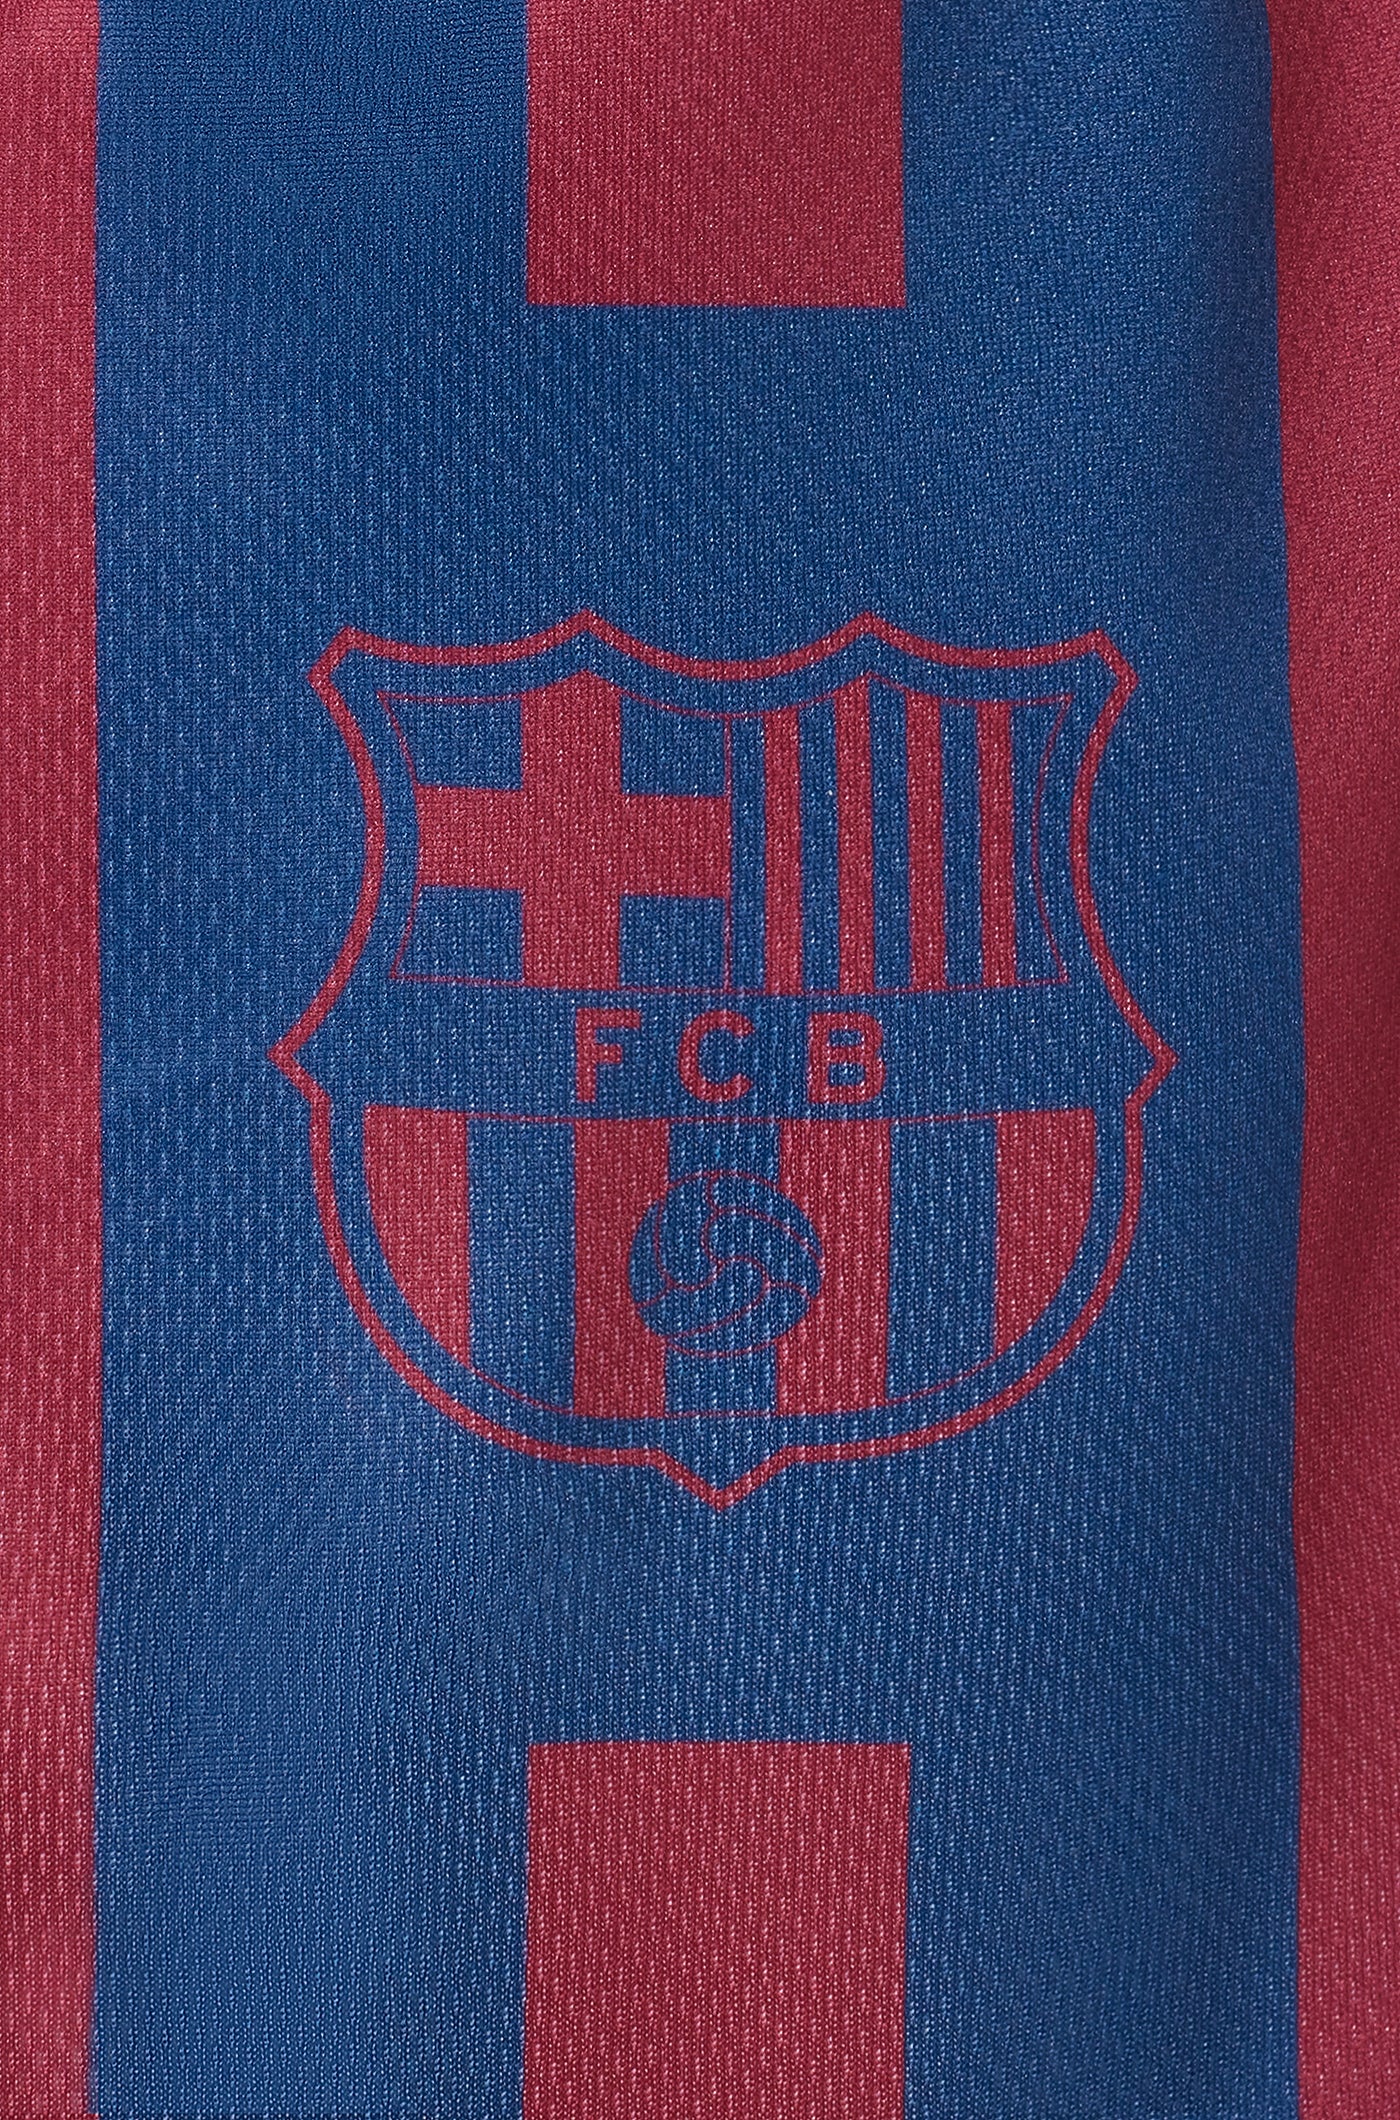 FC Barcelona dog t-shirt